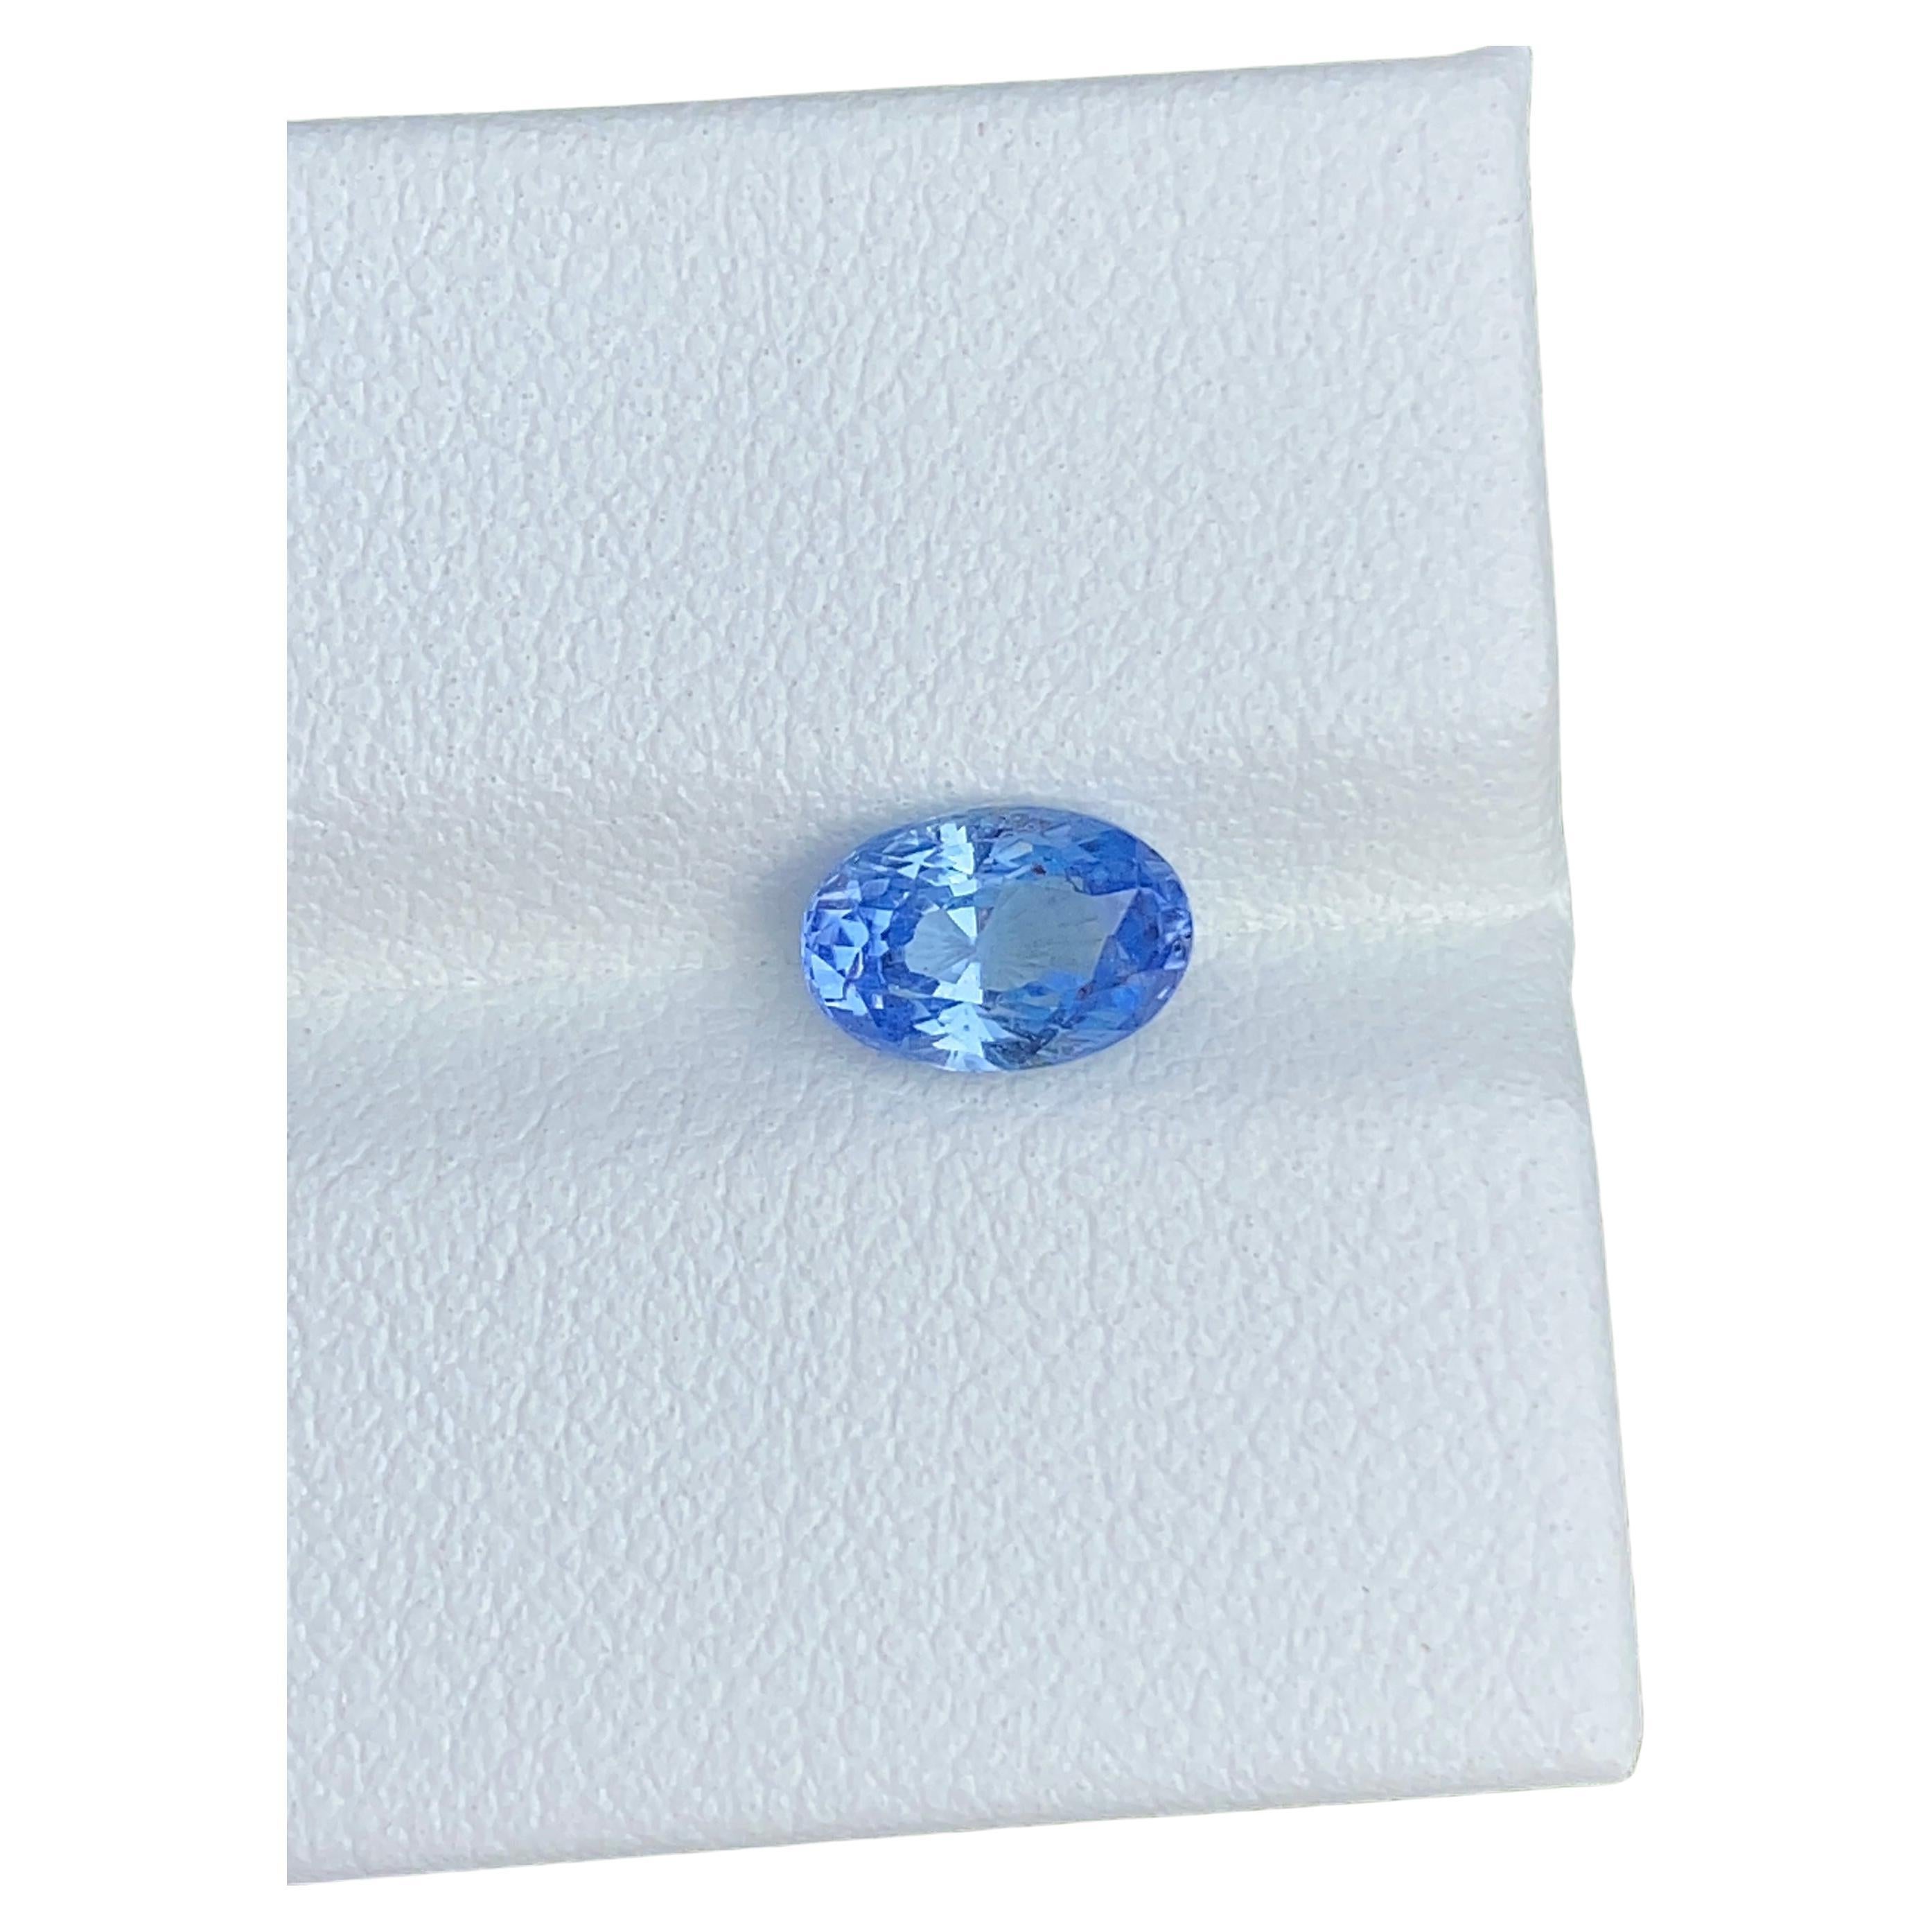 Bague saphir bleu non chauffé certifié, pierre précieuse ovale de 1,25 carat d'origine de Ceylan